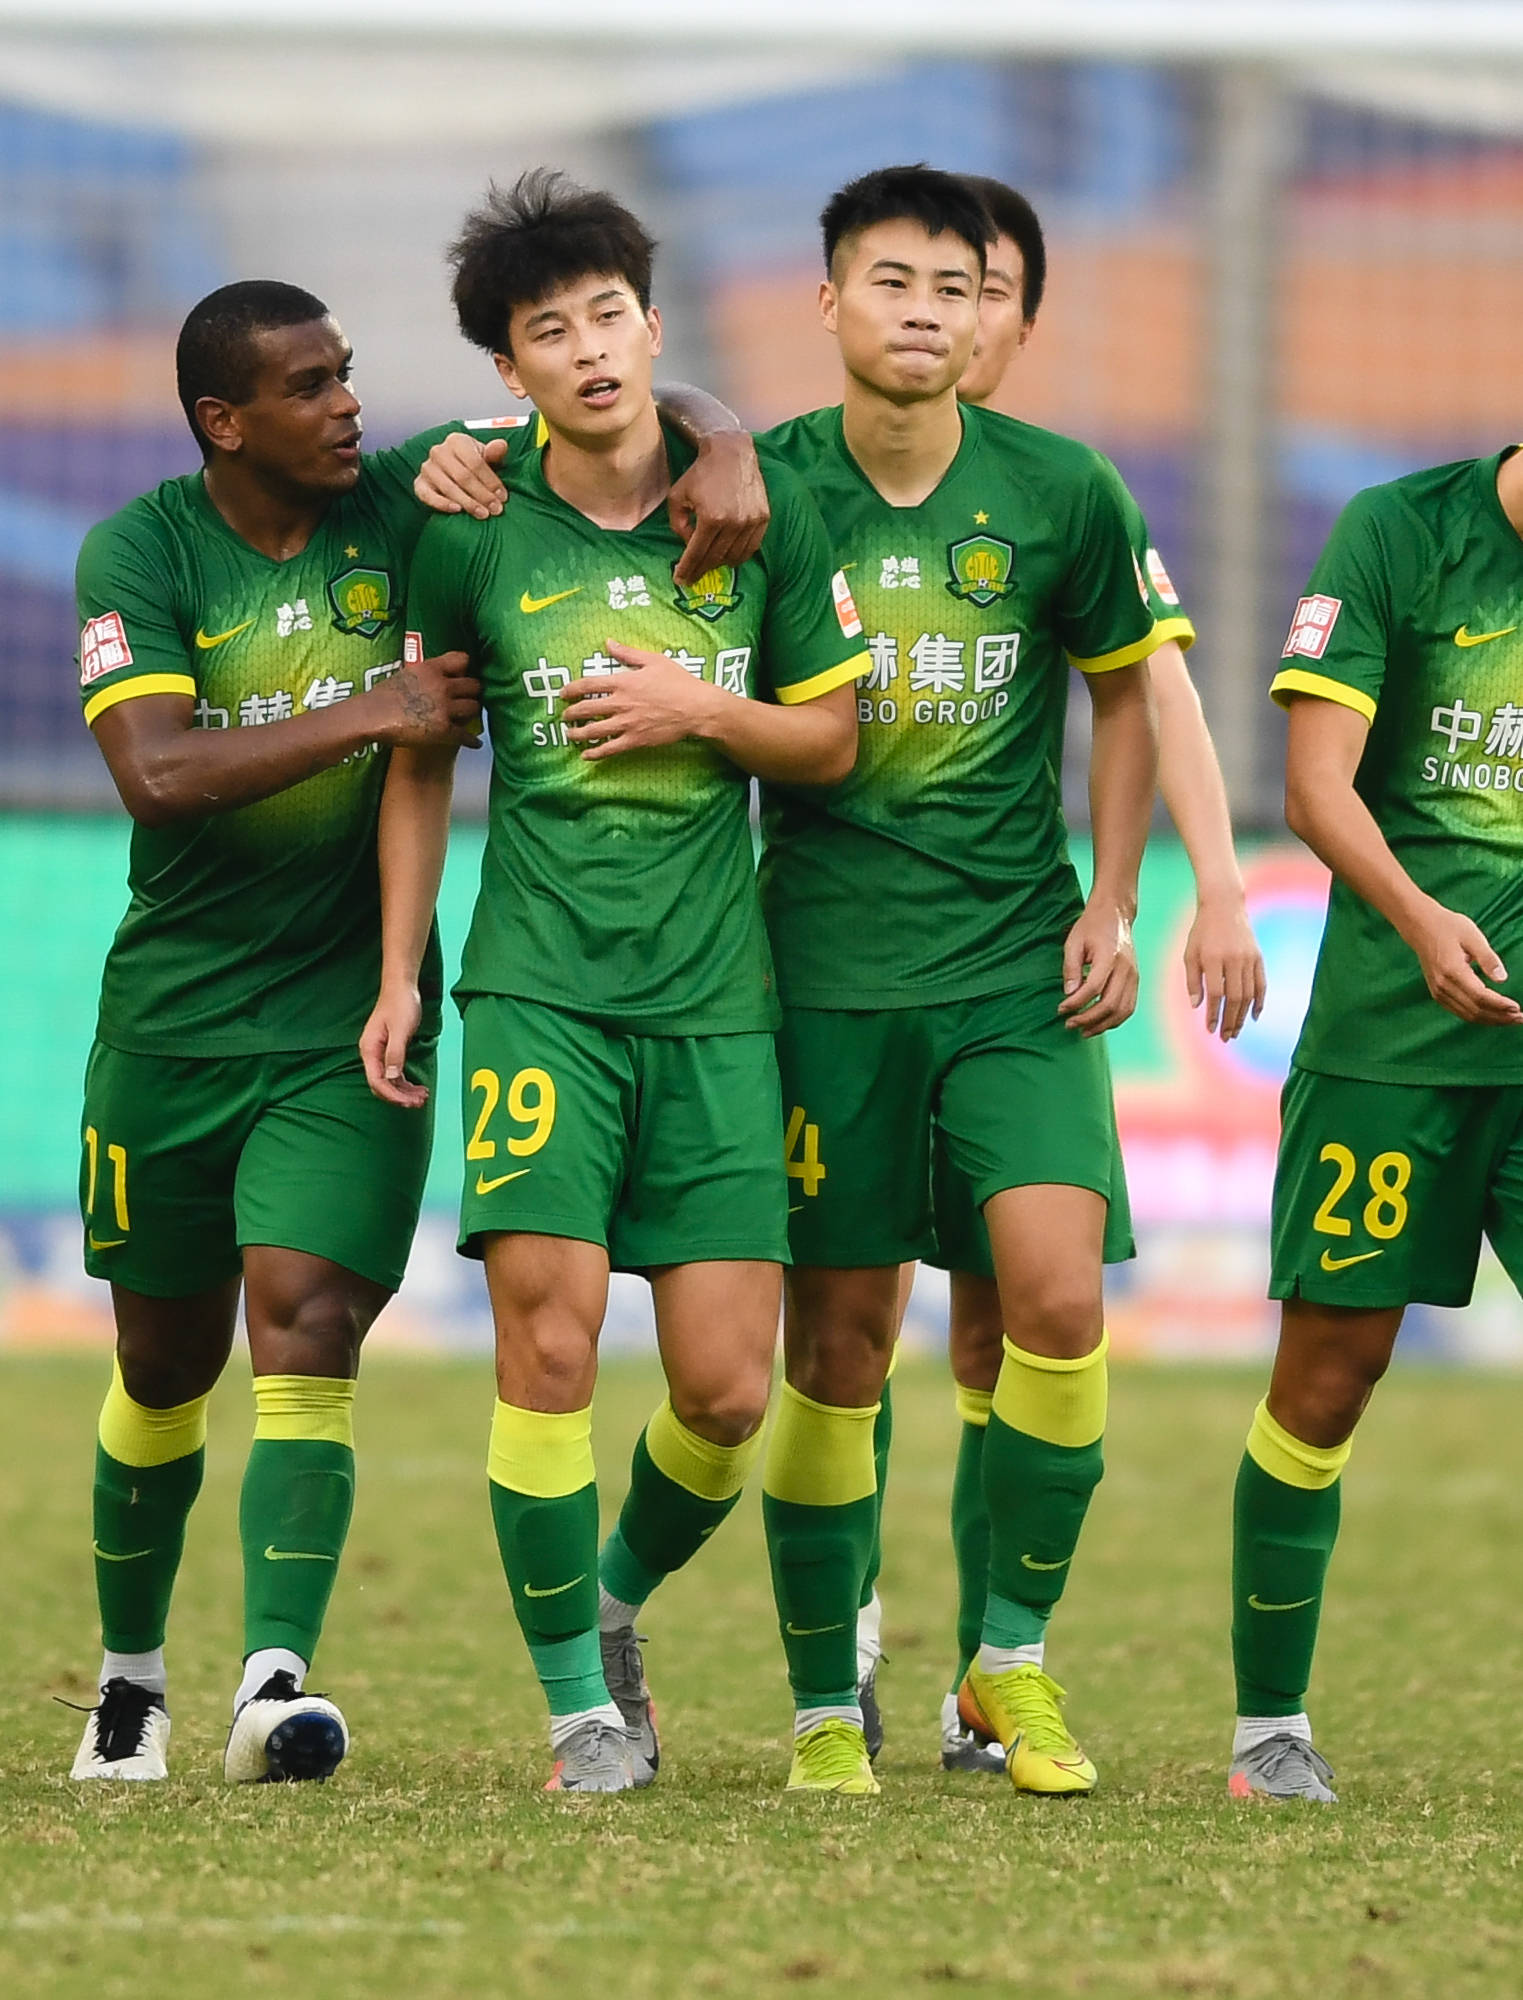 中国足球协会超级联赛第一阶段(苏州赛区)第14轮比赛中,北京中赫国安